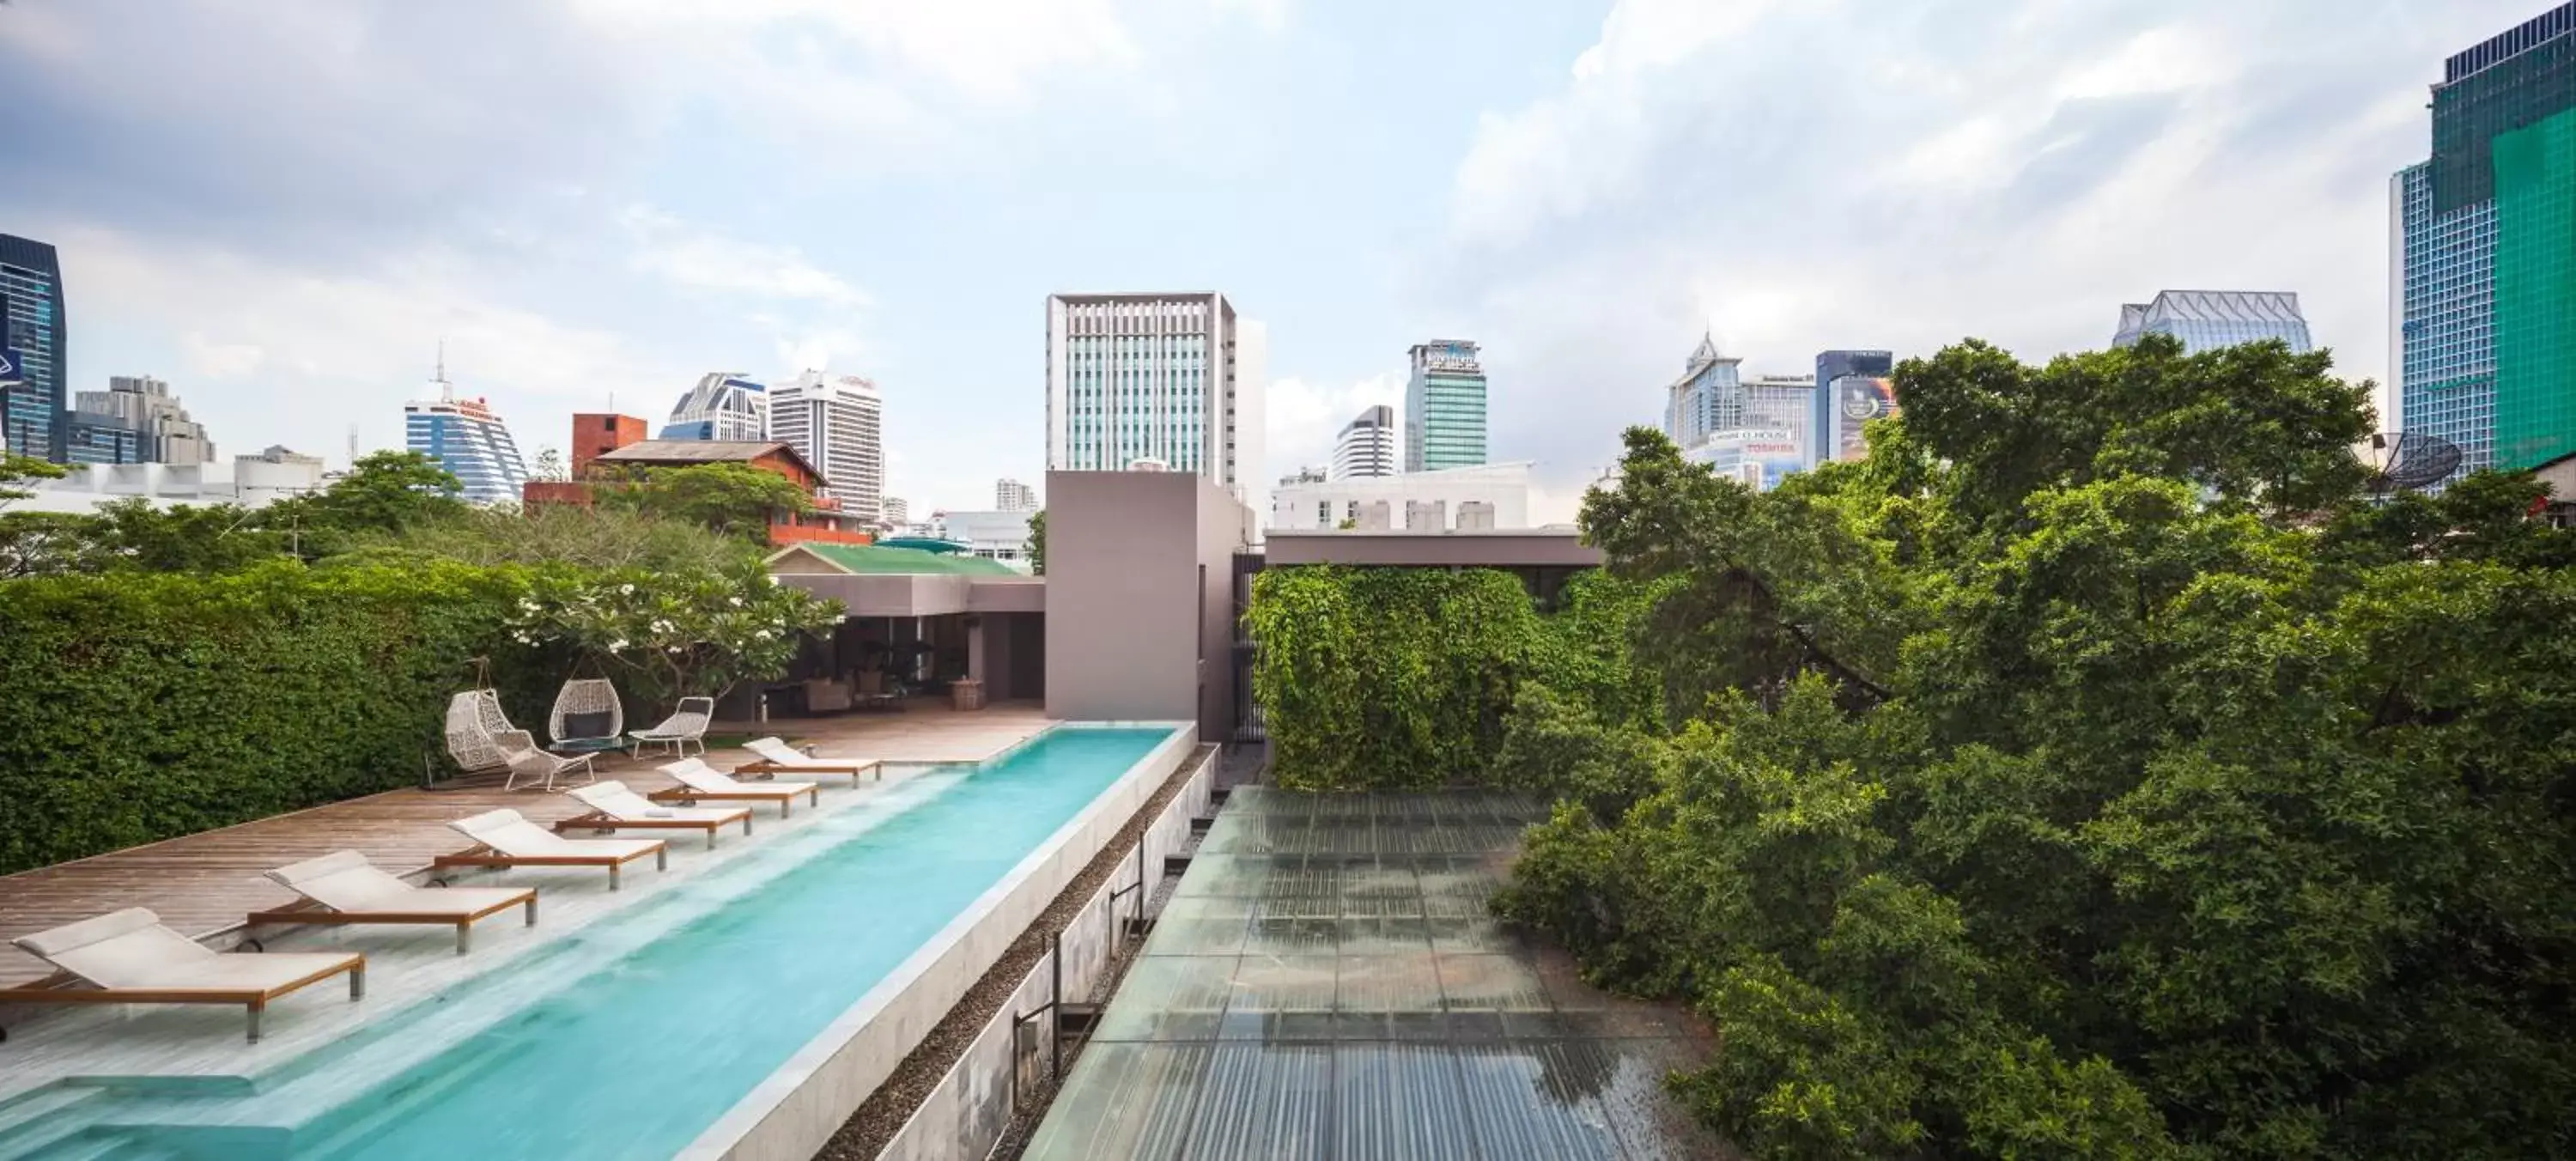 Day, Swimming Pool in Ad Lib Hotel Bangkok